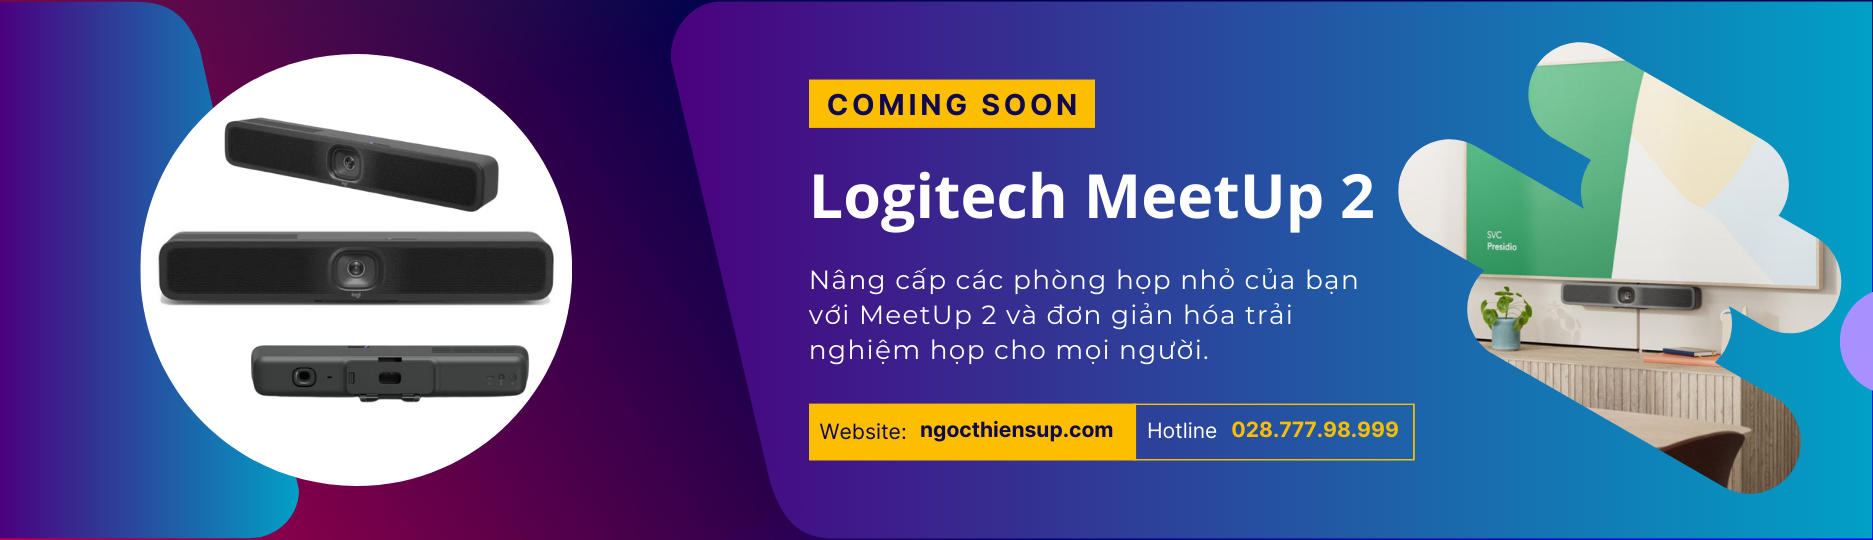 Logitech Meetup 2